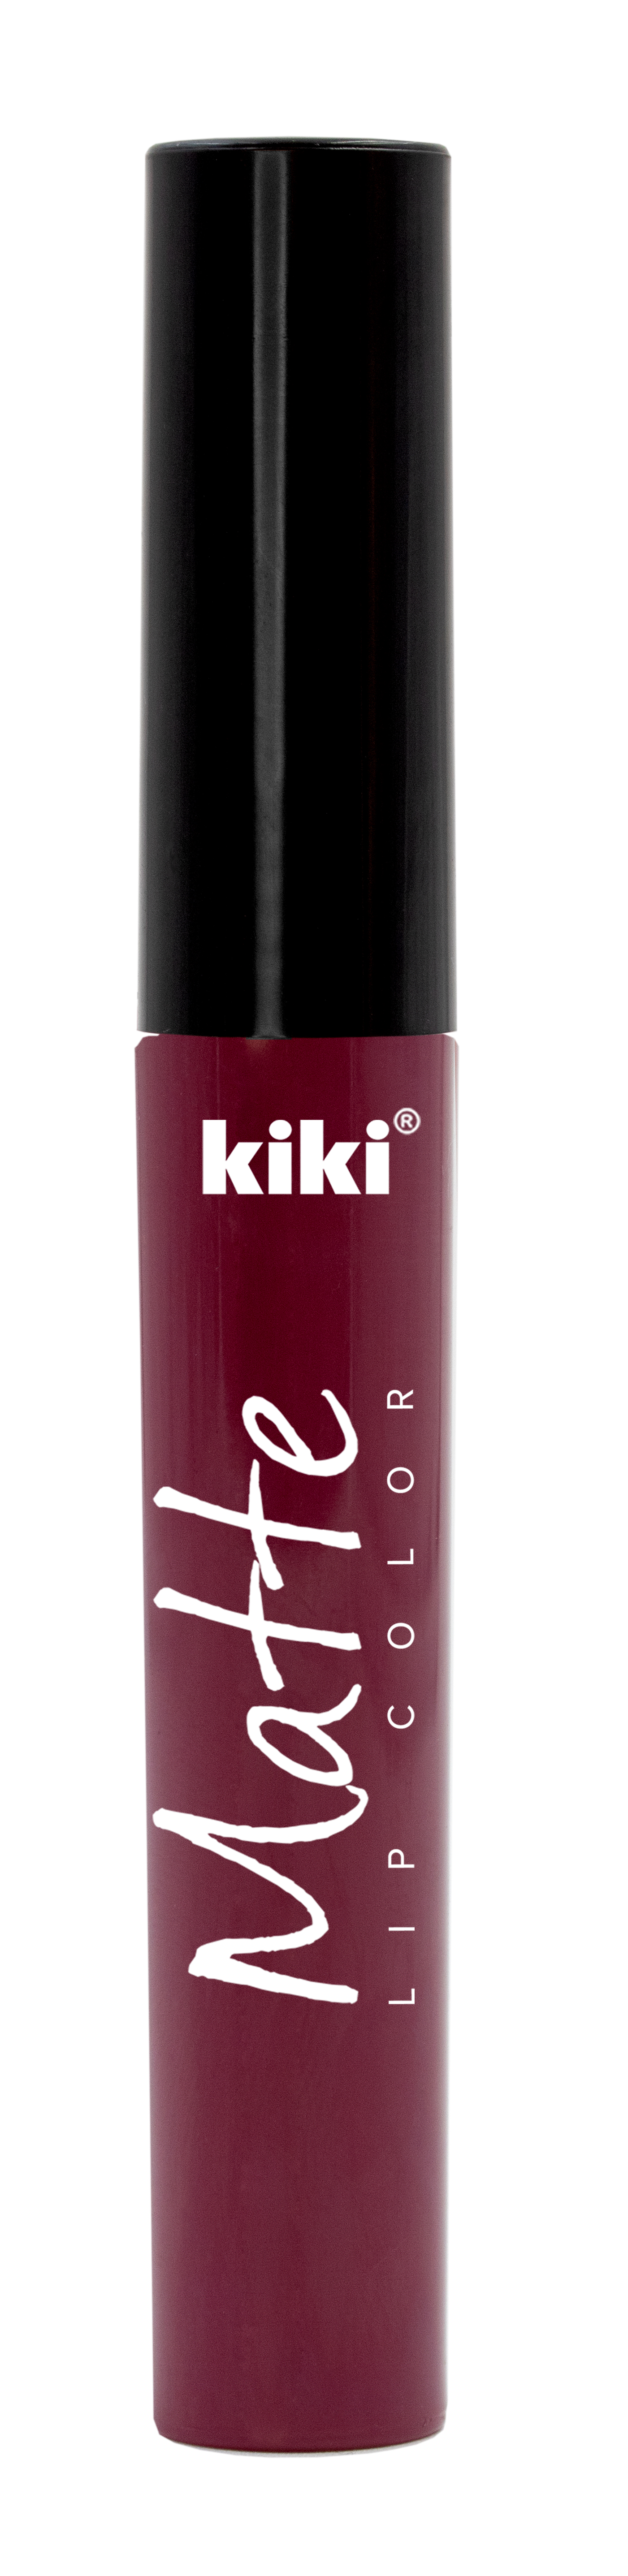 Жидкая помада для губ KIKI Matte lip color 205 красный виноград - фото 1